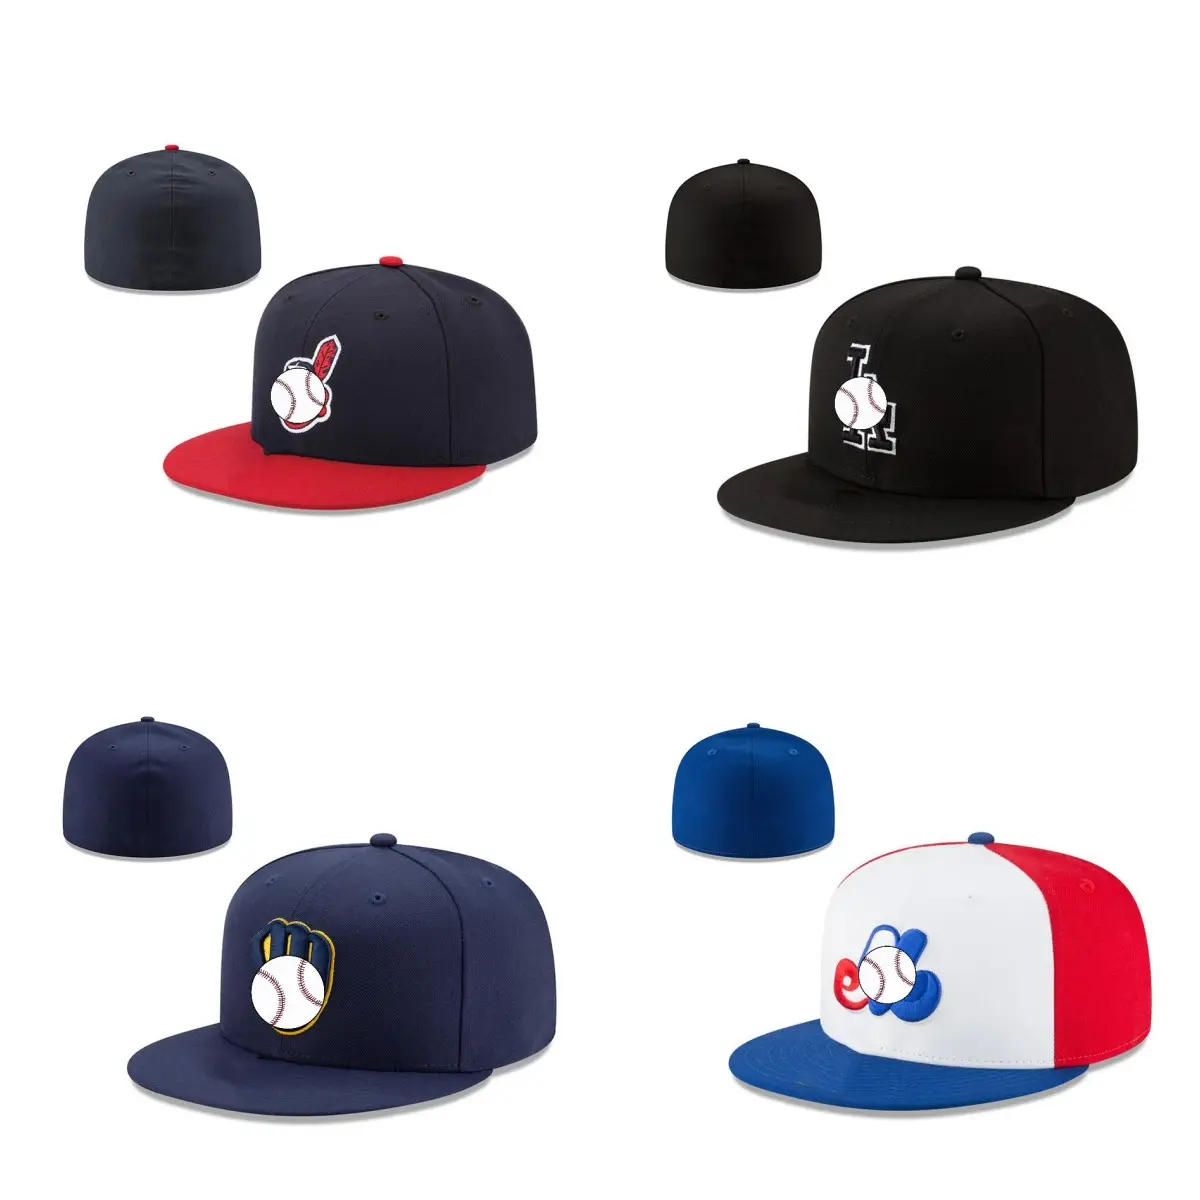 Toptan spor Gorras Unisex Trucker donatılmış şapka amerikan futbolu beyzbol şapkası erkekler ve kadınlar için ücretsiz kargo 20 adet/110usd